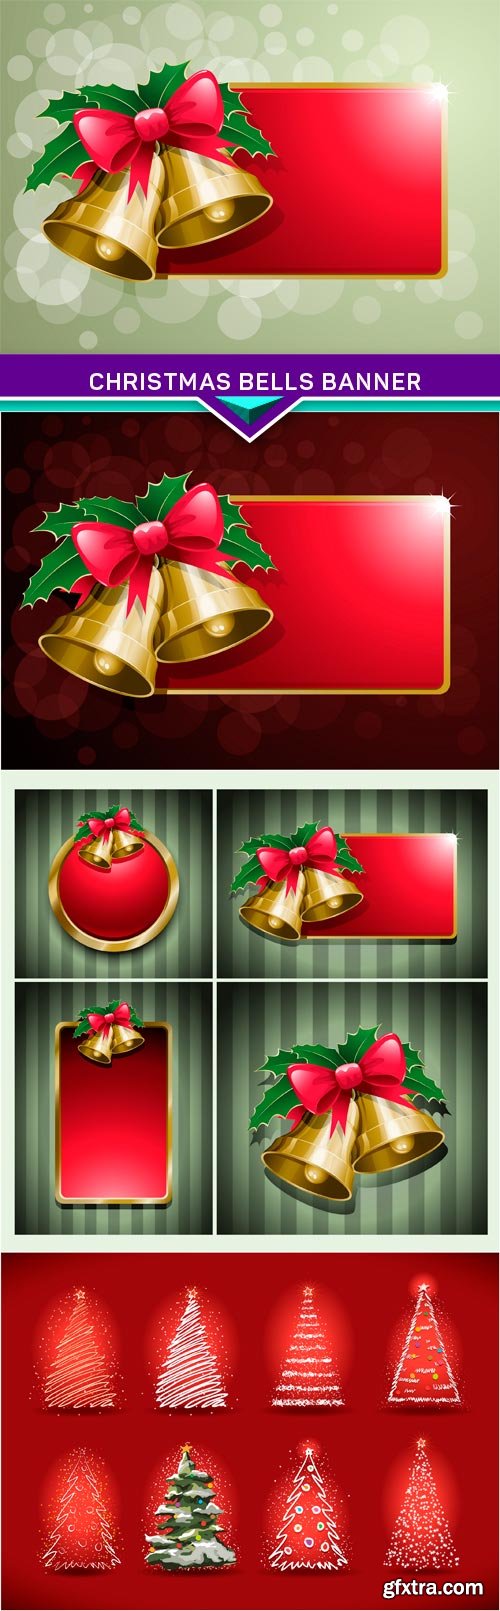 Christmas bells banner 4X JPEG